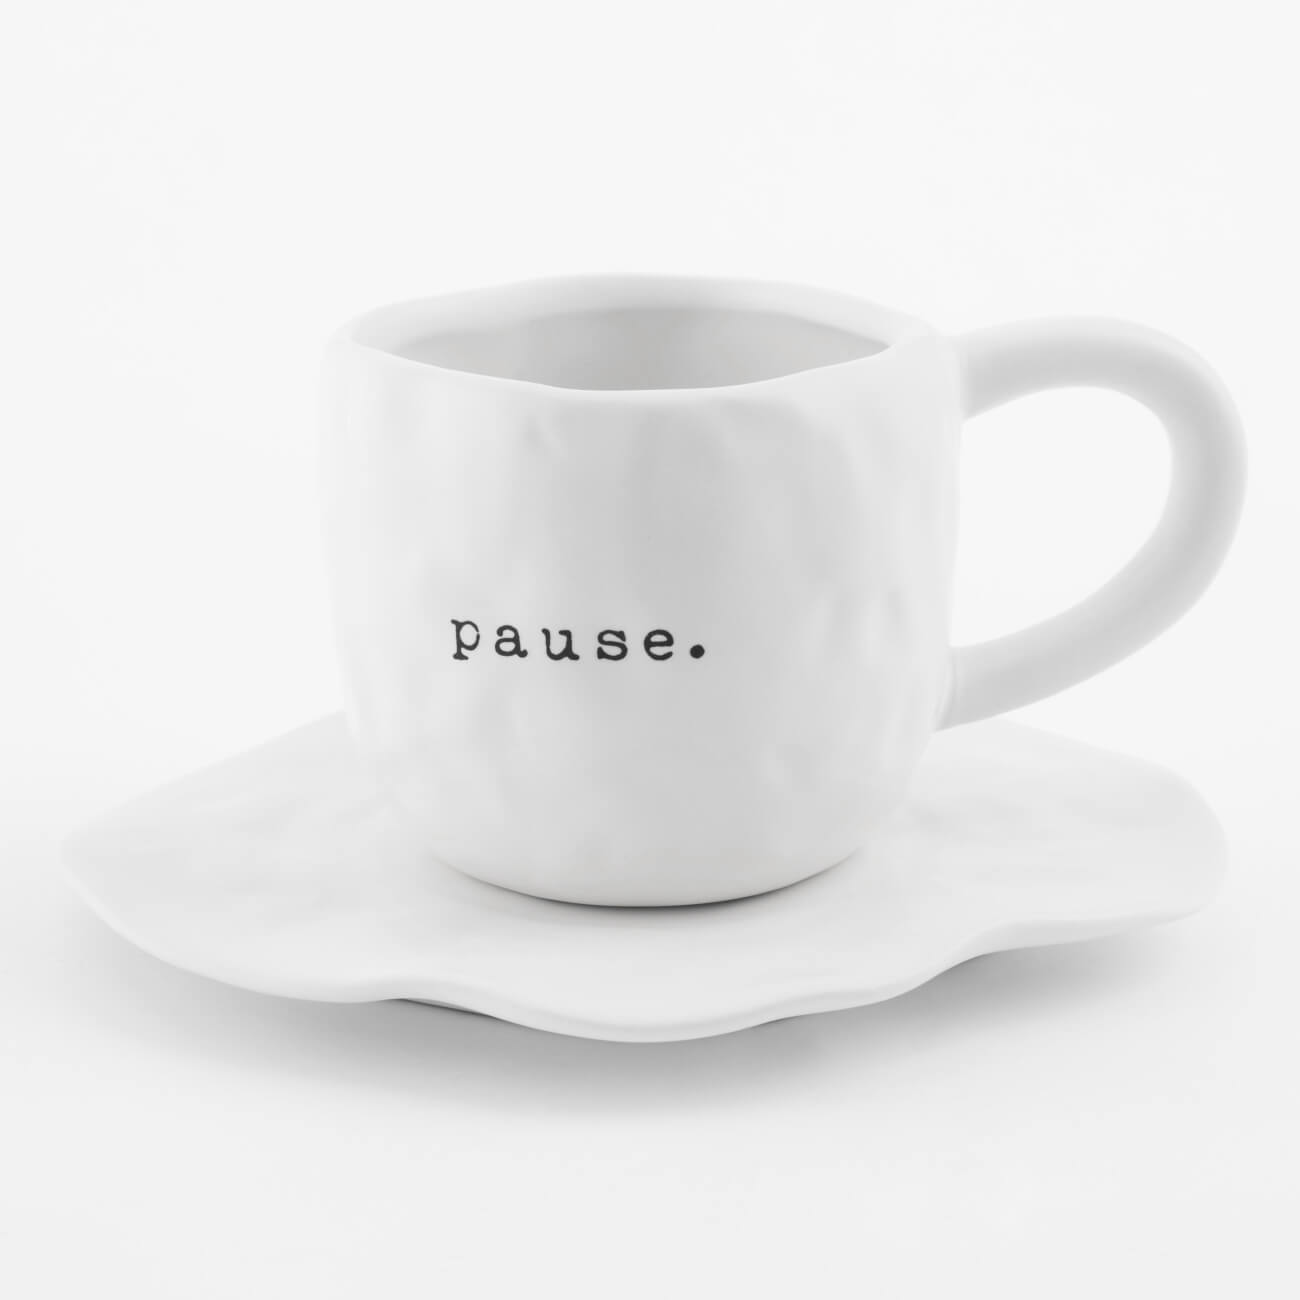 Пара чайная, 1 перс, 2 пр, 420 мл, керамика, белая, Pause, Crumple font изображение № 1